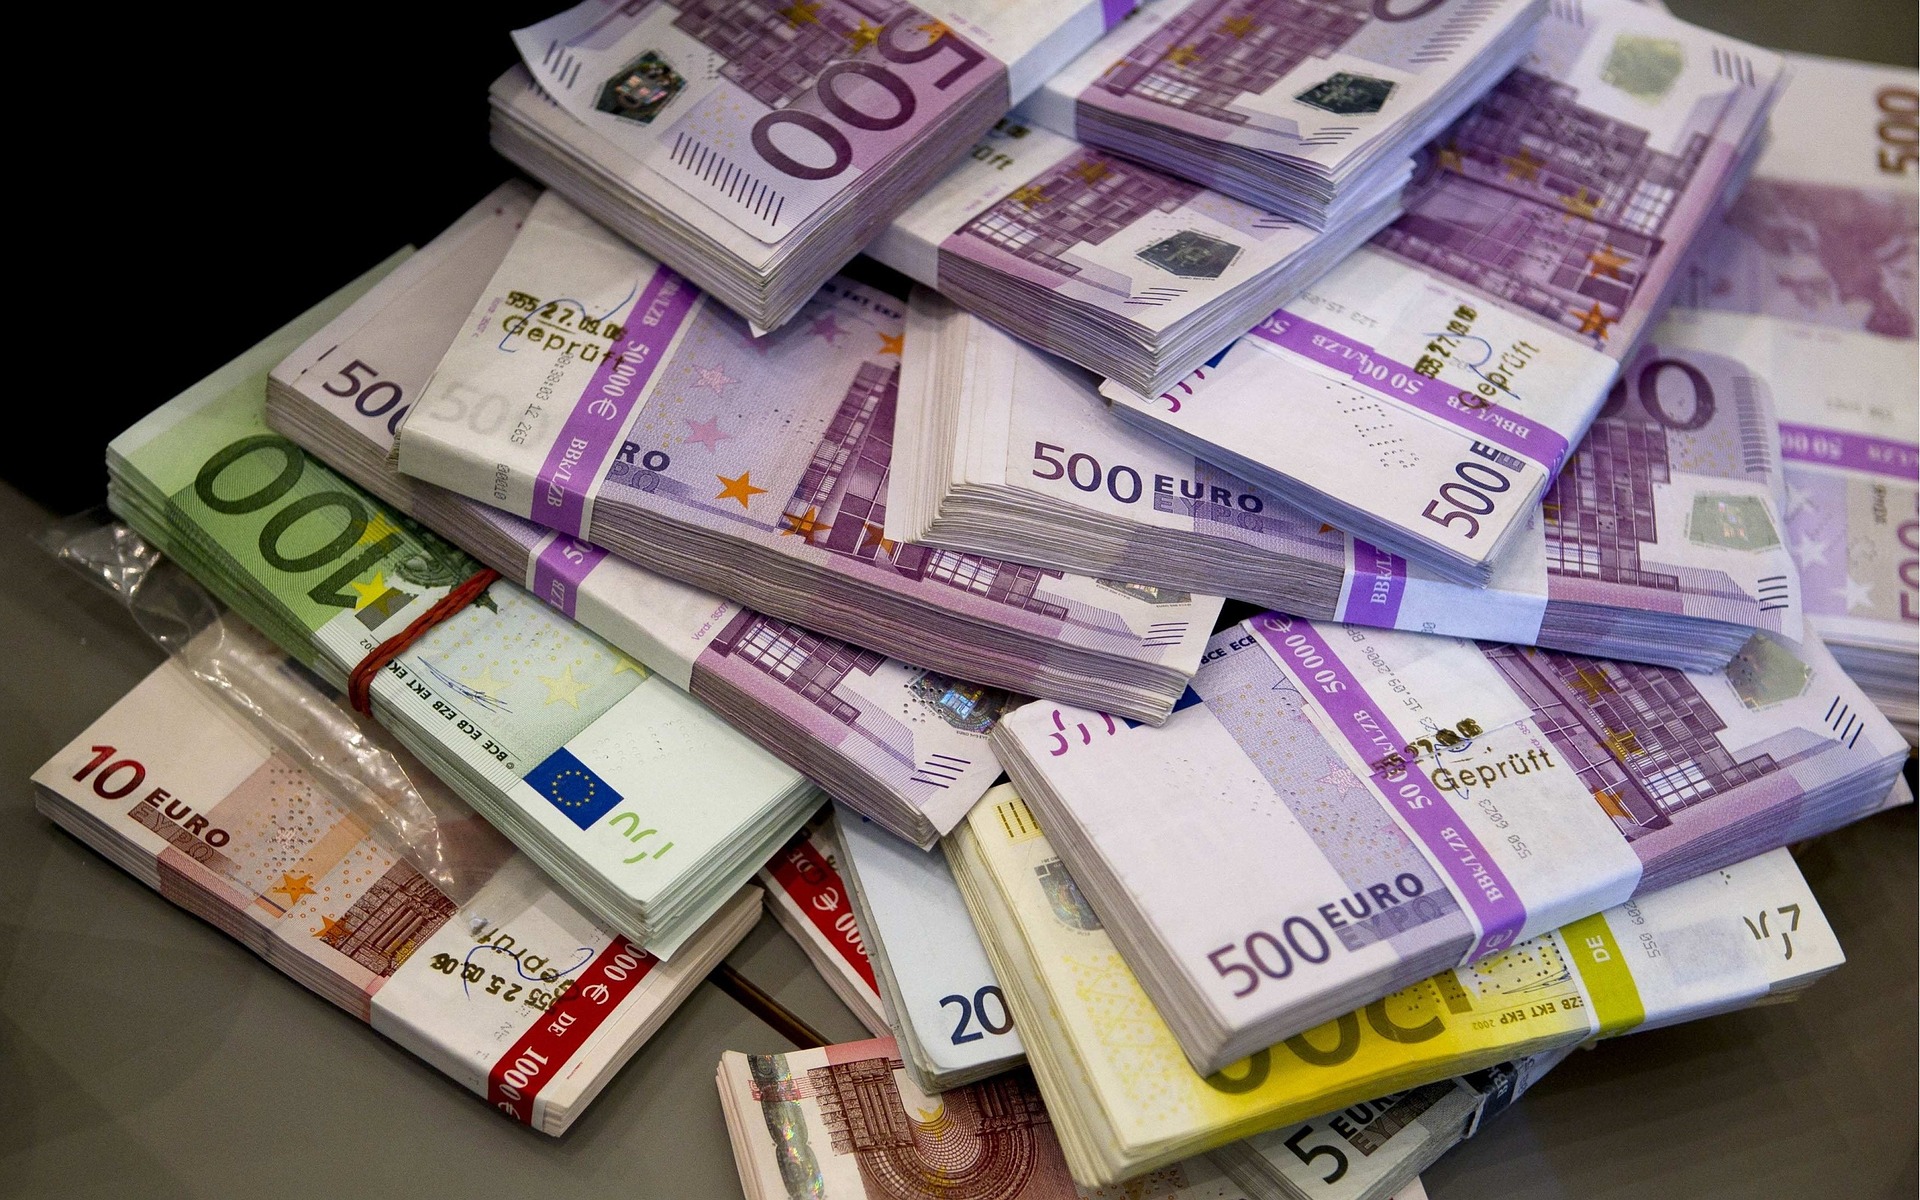 프랑스 국가재난 기업 지원금(Fonds de solidarité) 1,500유로 수령했습니다.